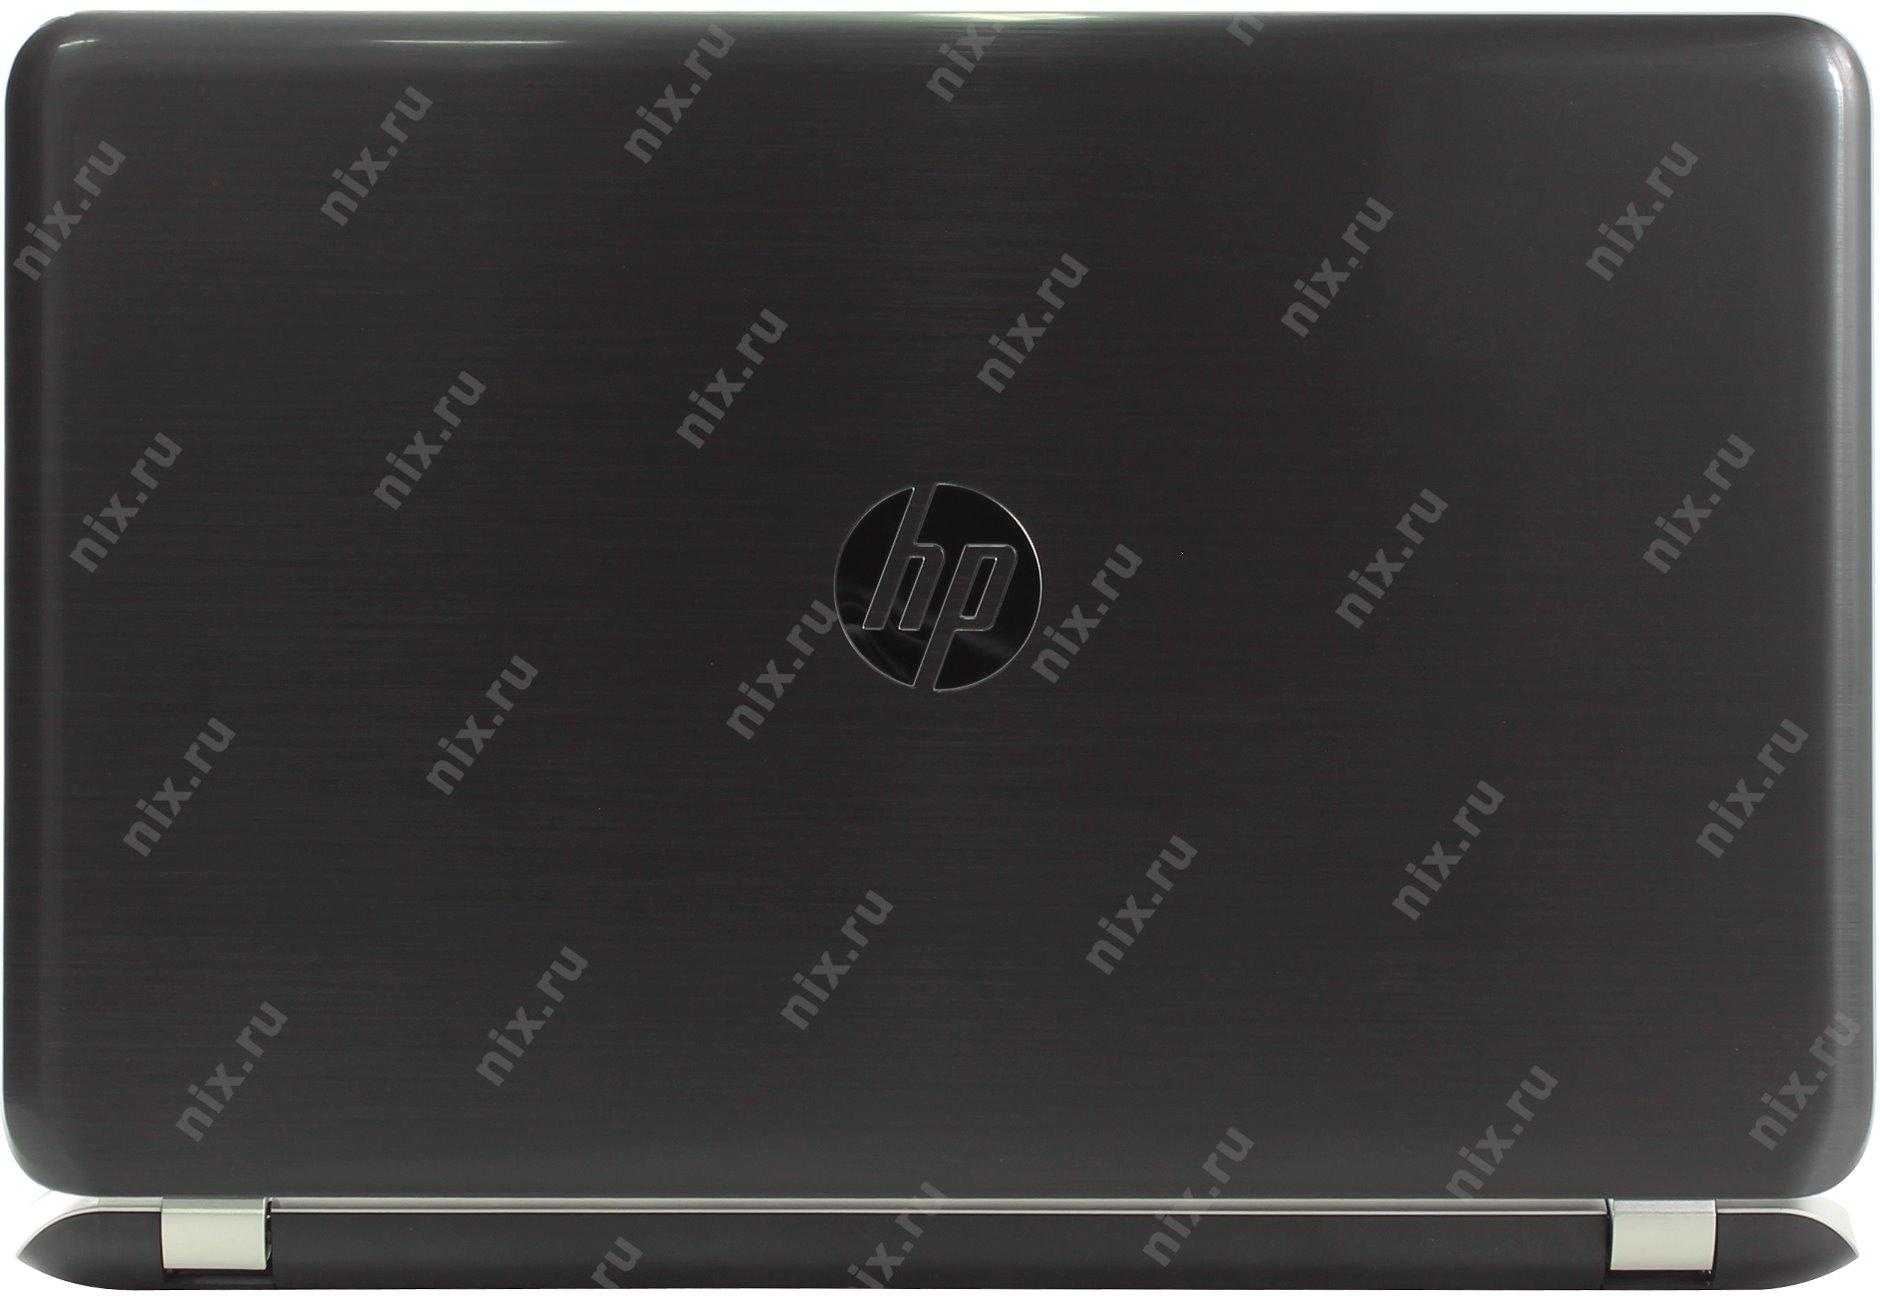 Обзор ноутбука hp pavilion 15-n029sr: домашняя «пятнашка» с гибридной графикой amd